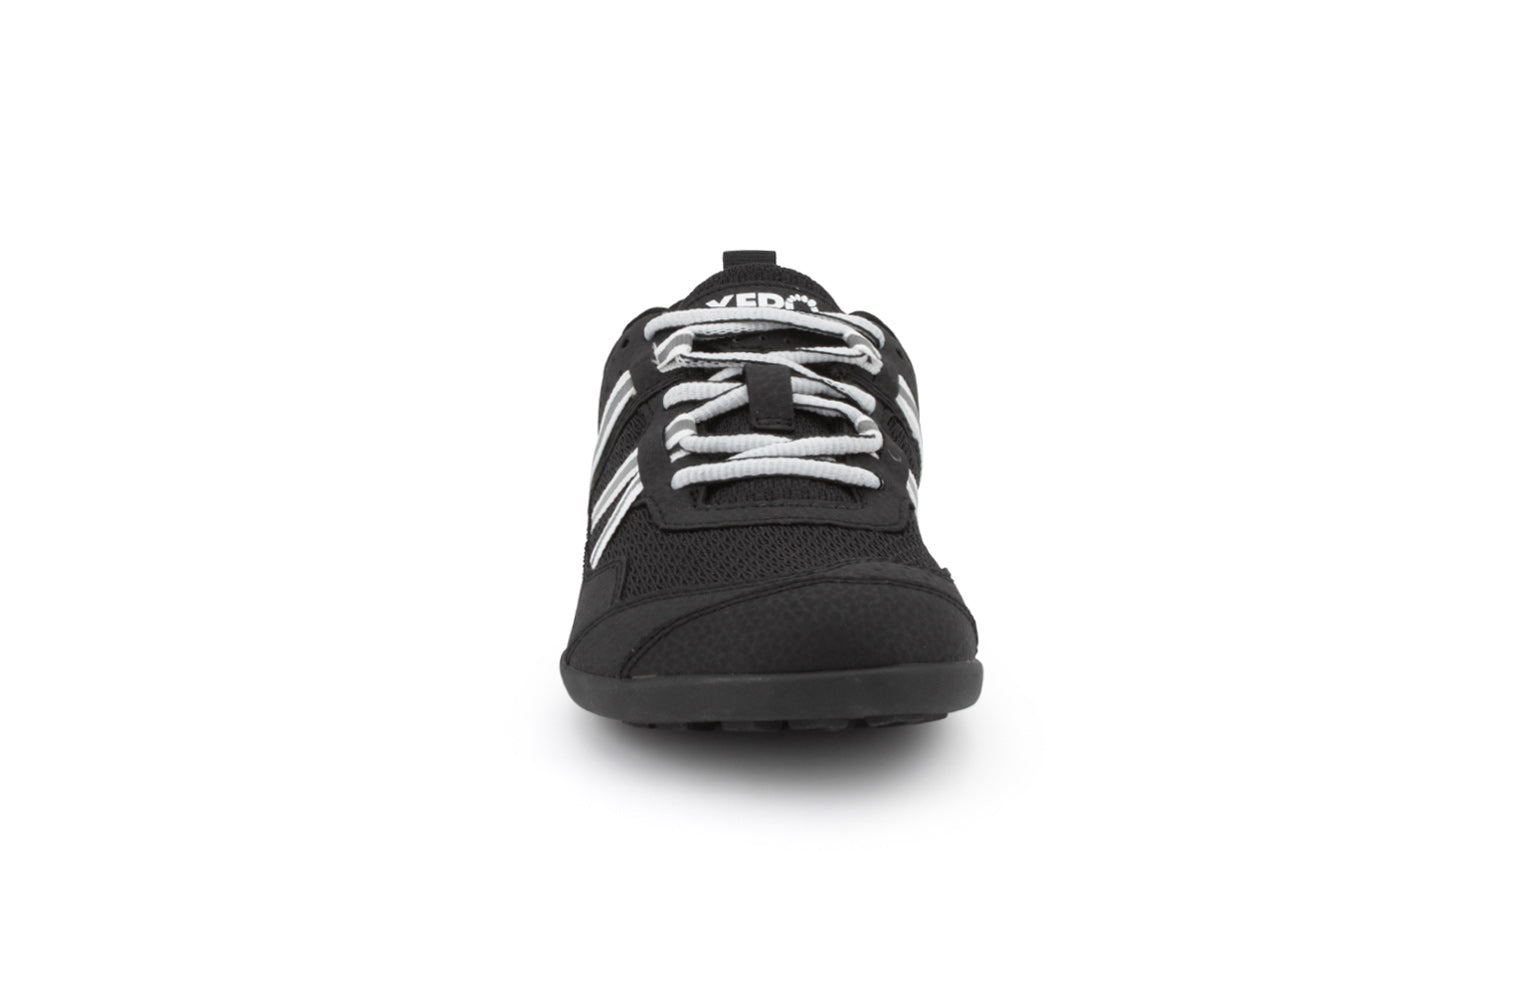 Xero Shoes Prio Kids barfods træningssko/sneakers til børn i farven black/white, forfra